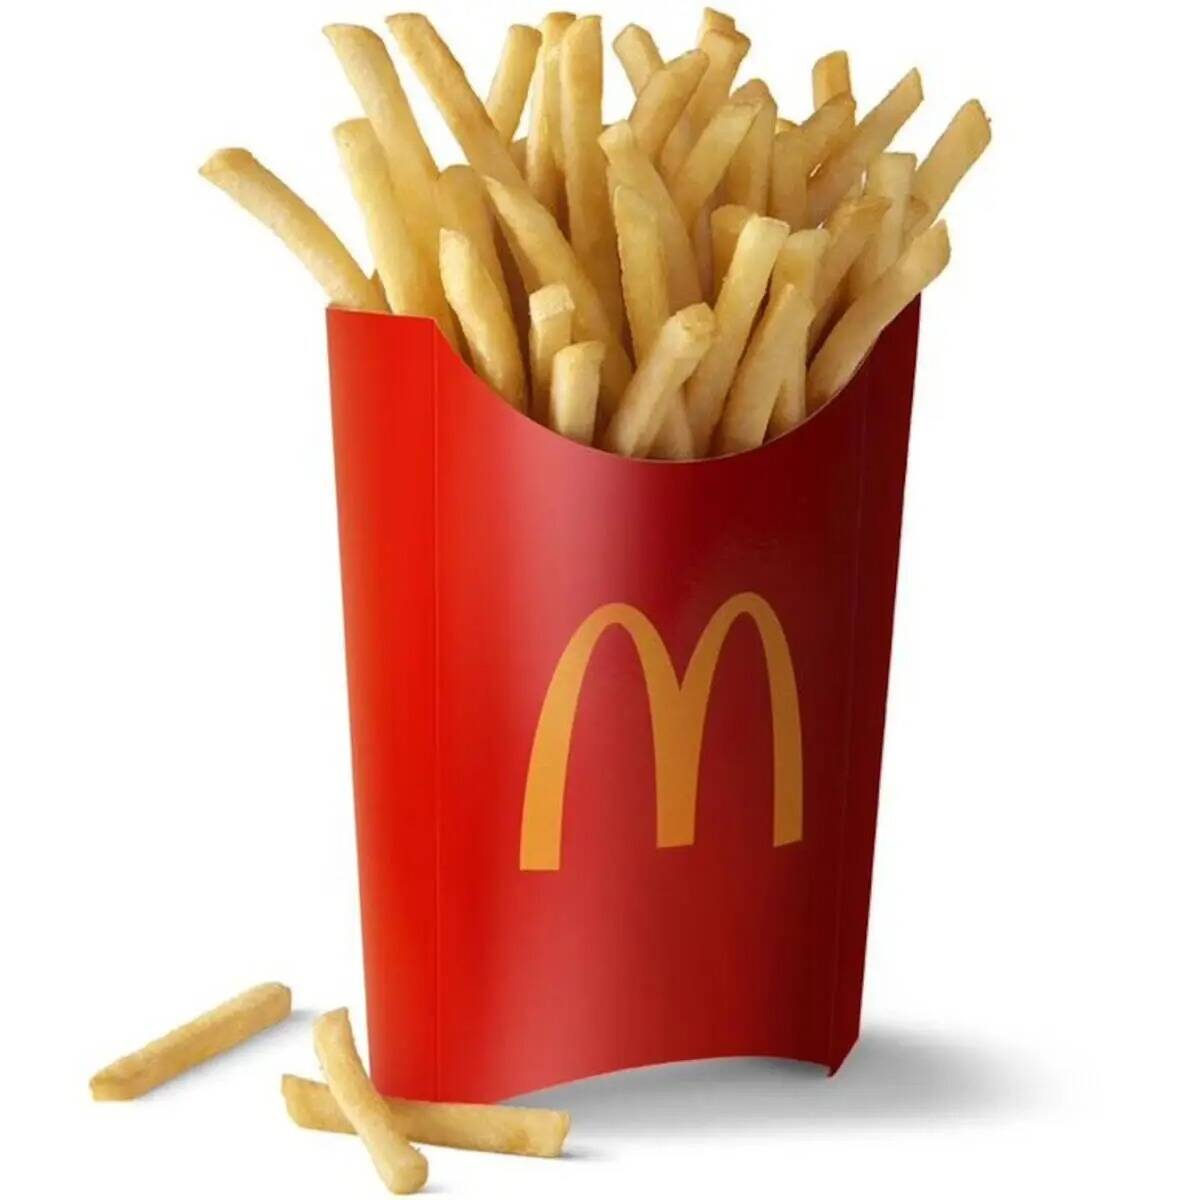 Las clásicas rojas, amarillas, calientes y crujientes: Las papas fritas de McDonald's. (McDona ...